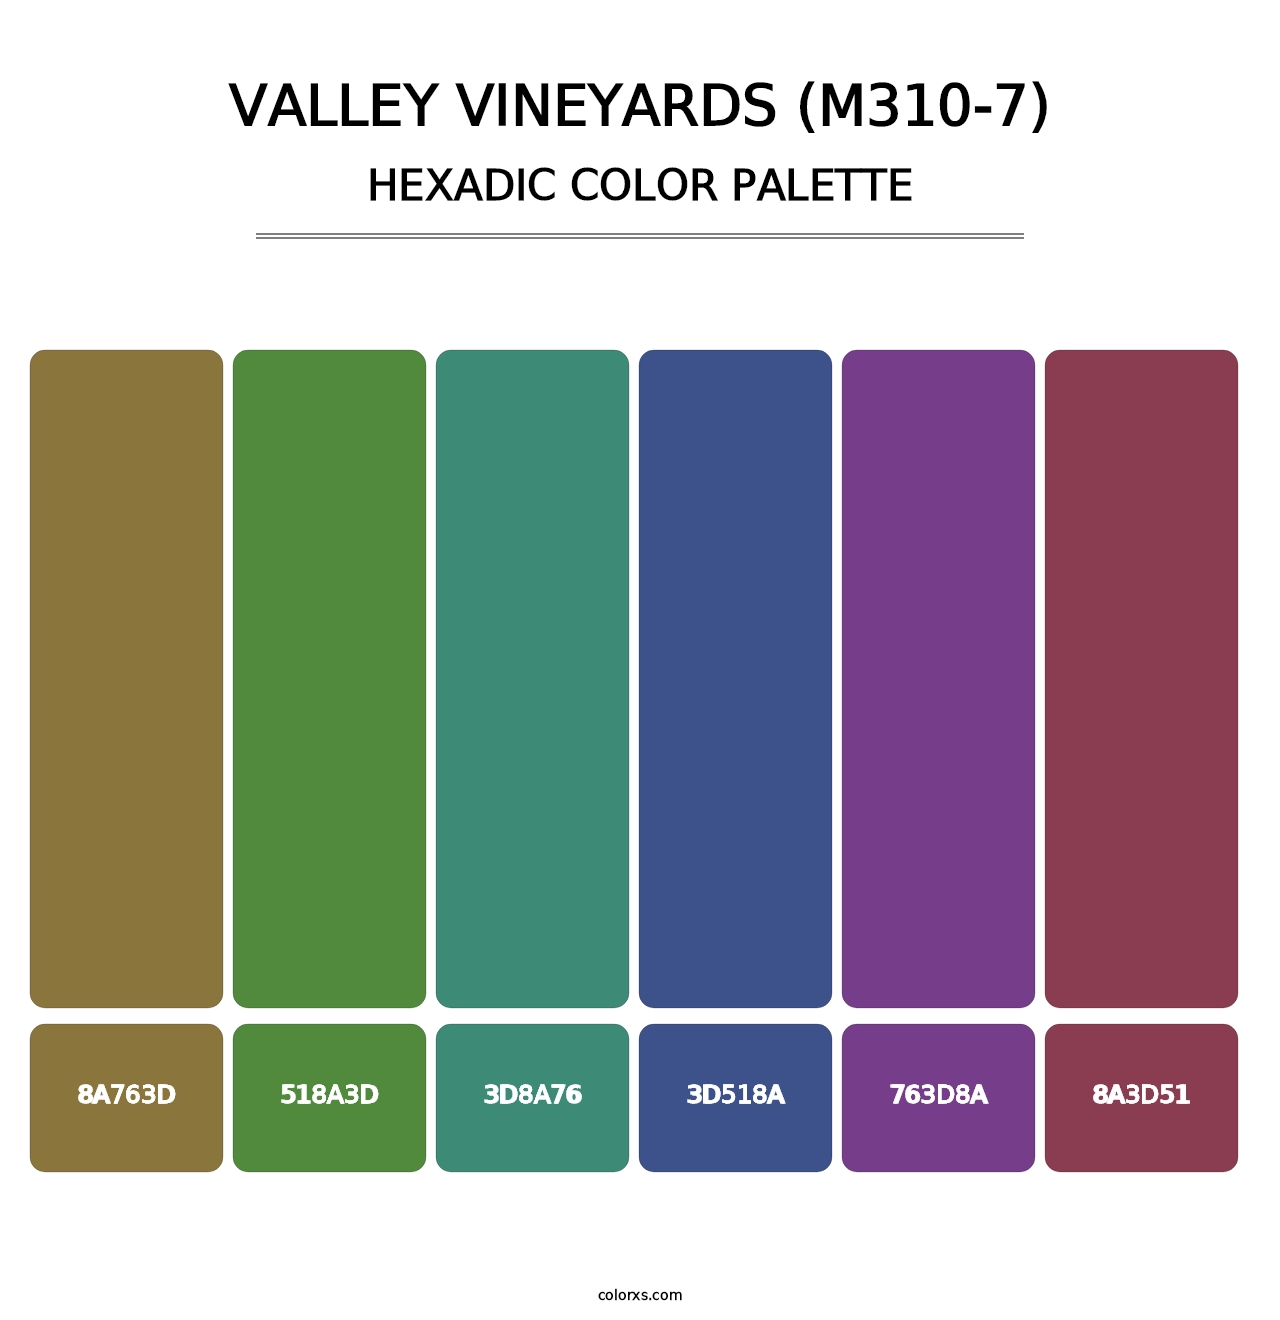 Valley Vineyards (M310-7) - Hexadic Color Palette